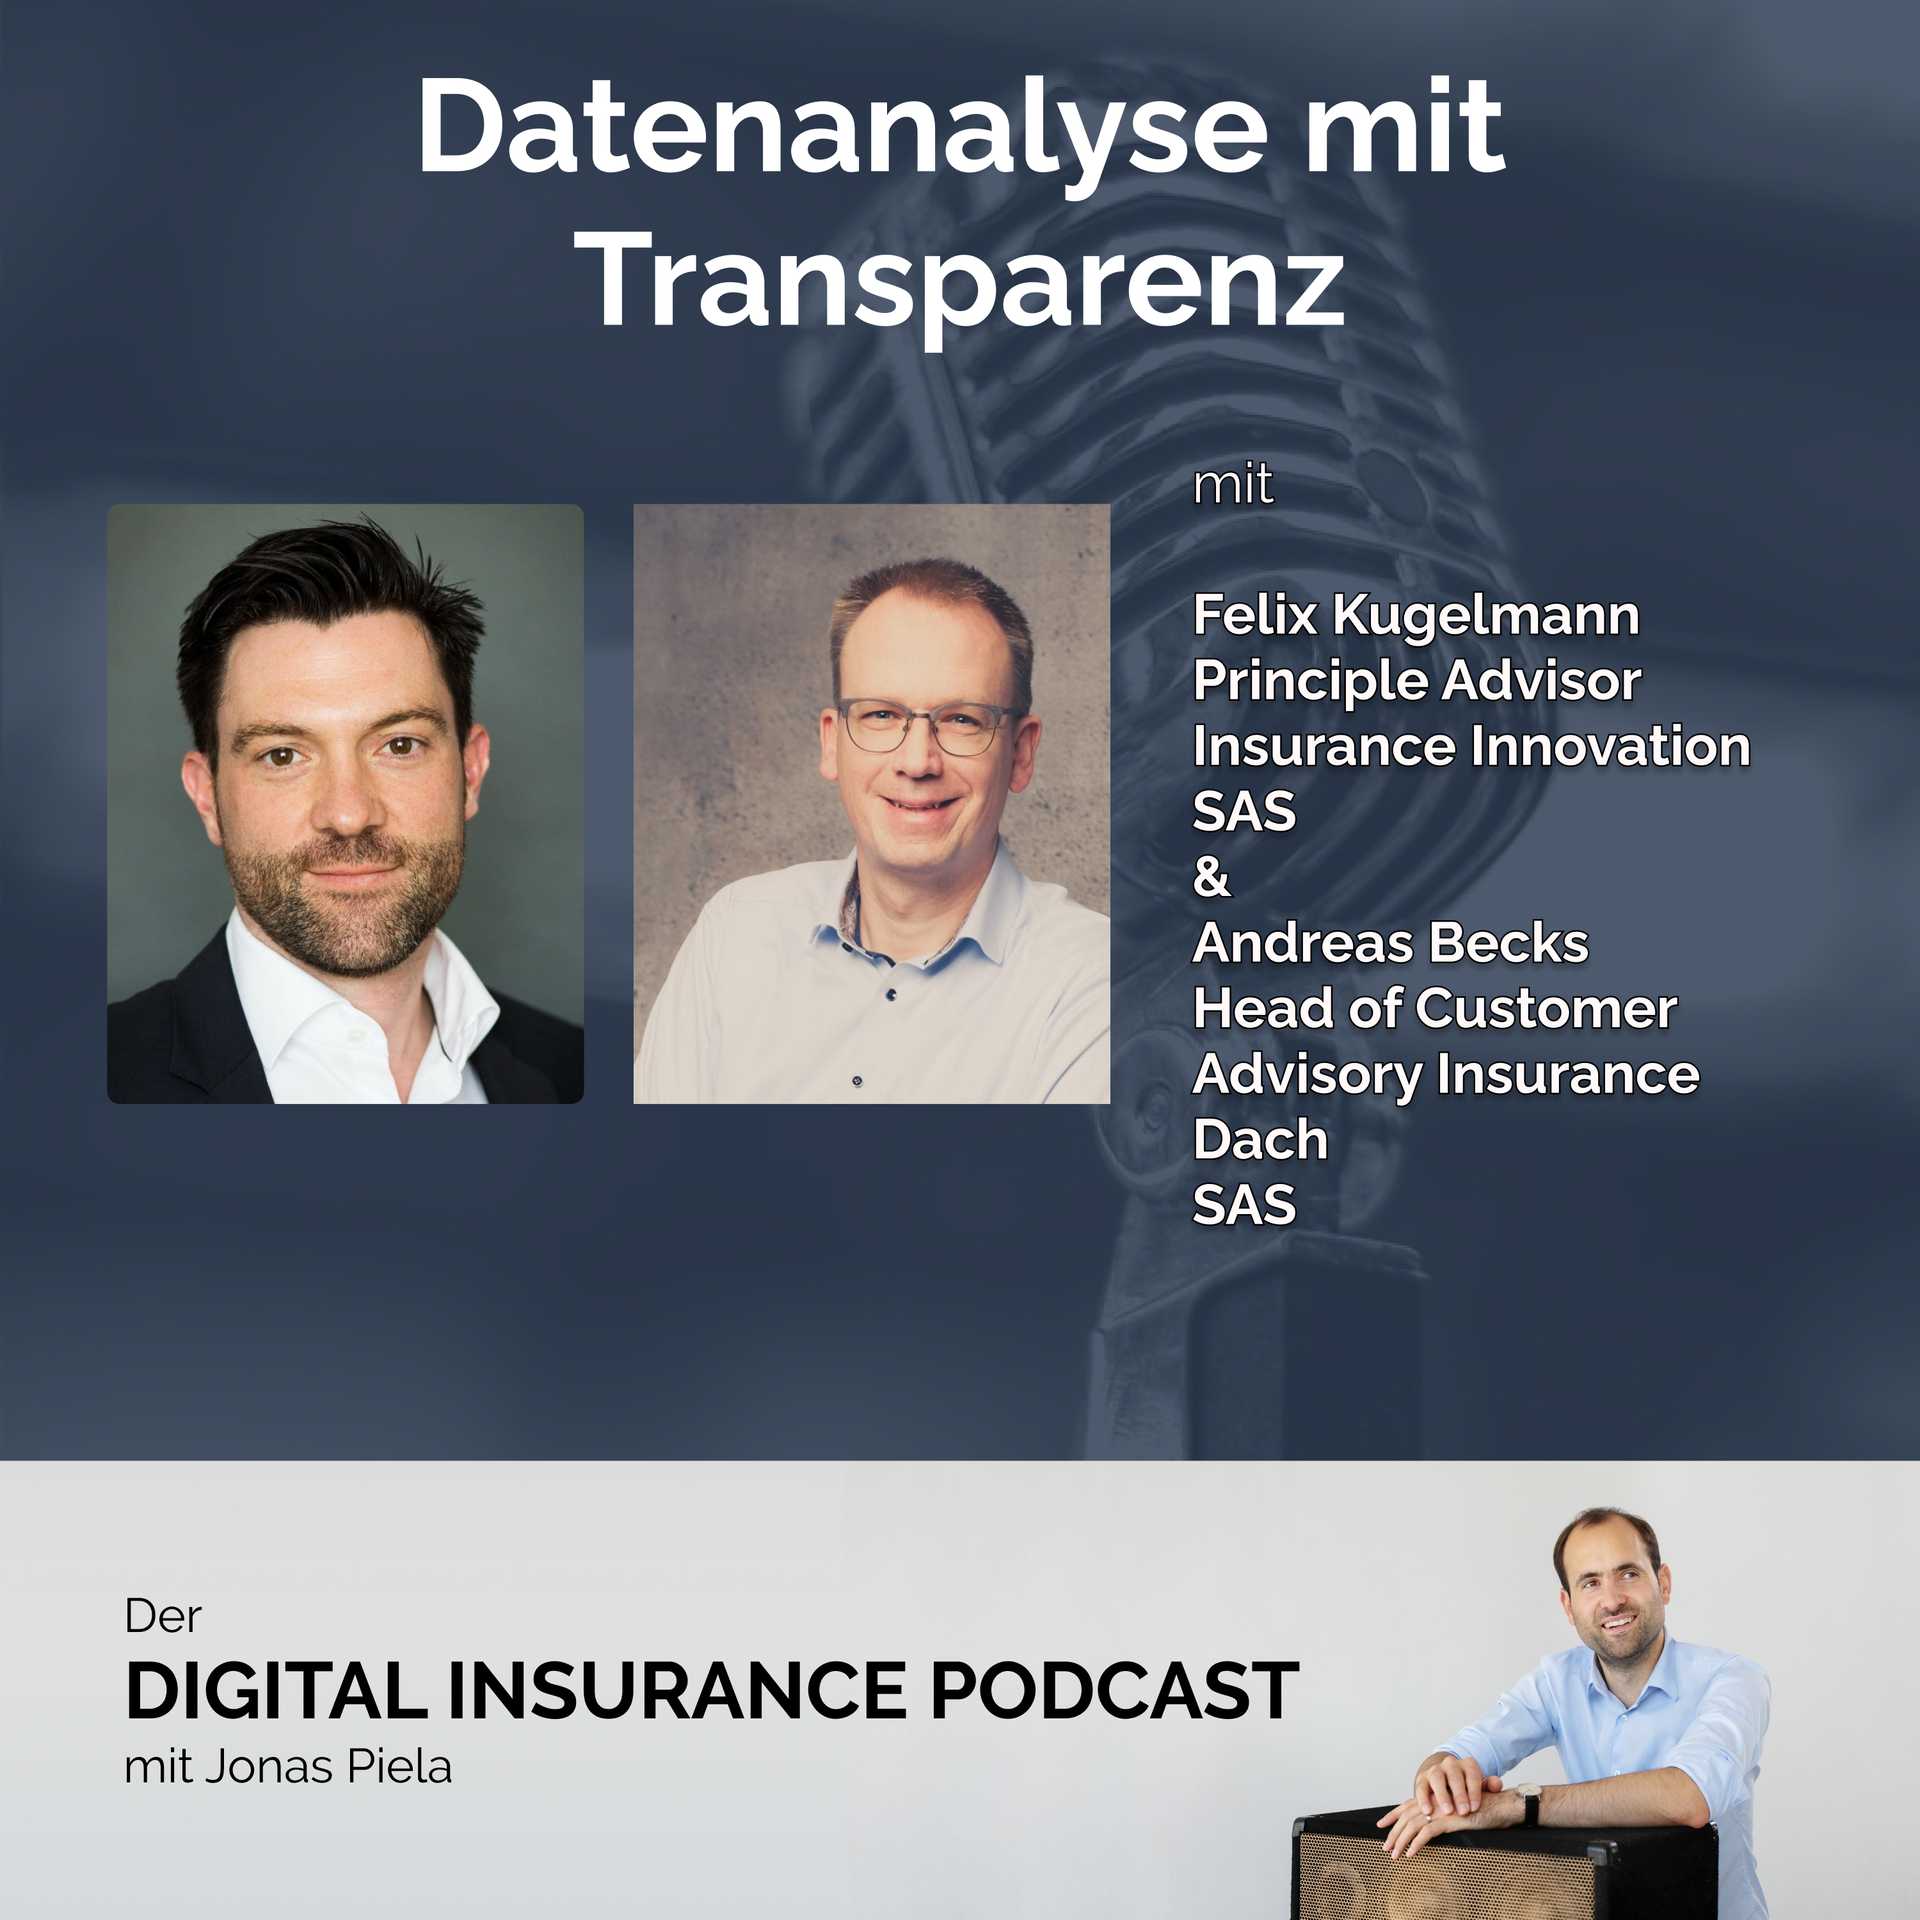 Datenanalyse mit Transparenz mit Felix Kugelmann und Andreas Becks von SAS